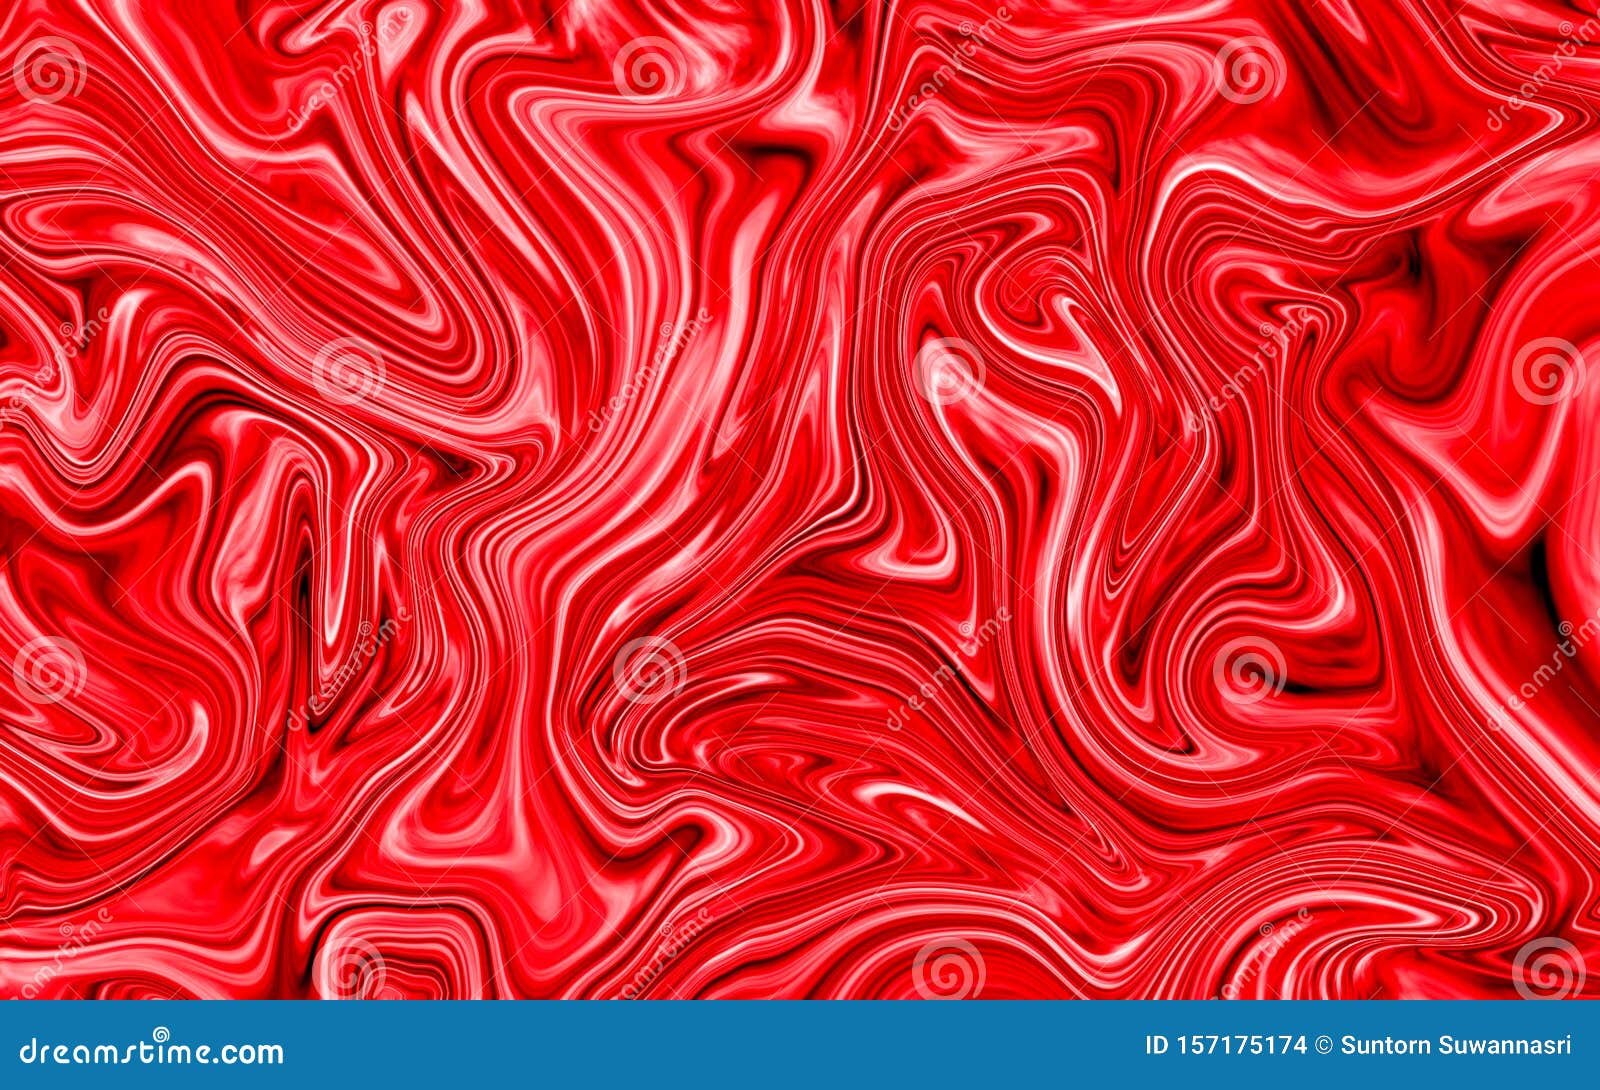 Hình nền trừu tượng với vòng xoáy đỏ nước tạo thành các hình khác nhau trông thật phức tạp và thu hút. Màu sắc marbled mang đến sự nổi bật cho hình nền, lôi cuốn người xem hơn vào thế giới trừu tượng đầy màu sắc và tạo nên một ấn tượng khó quên.